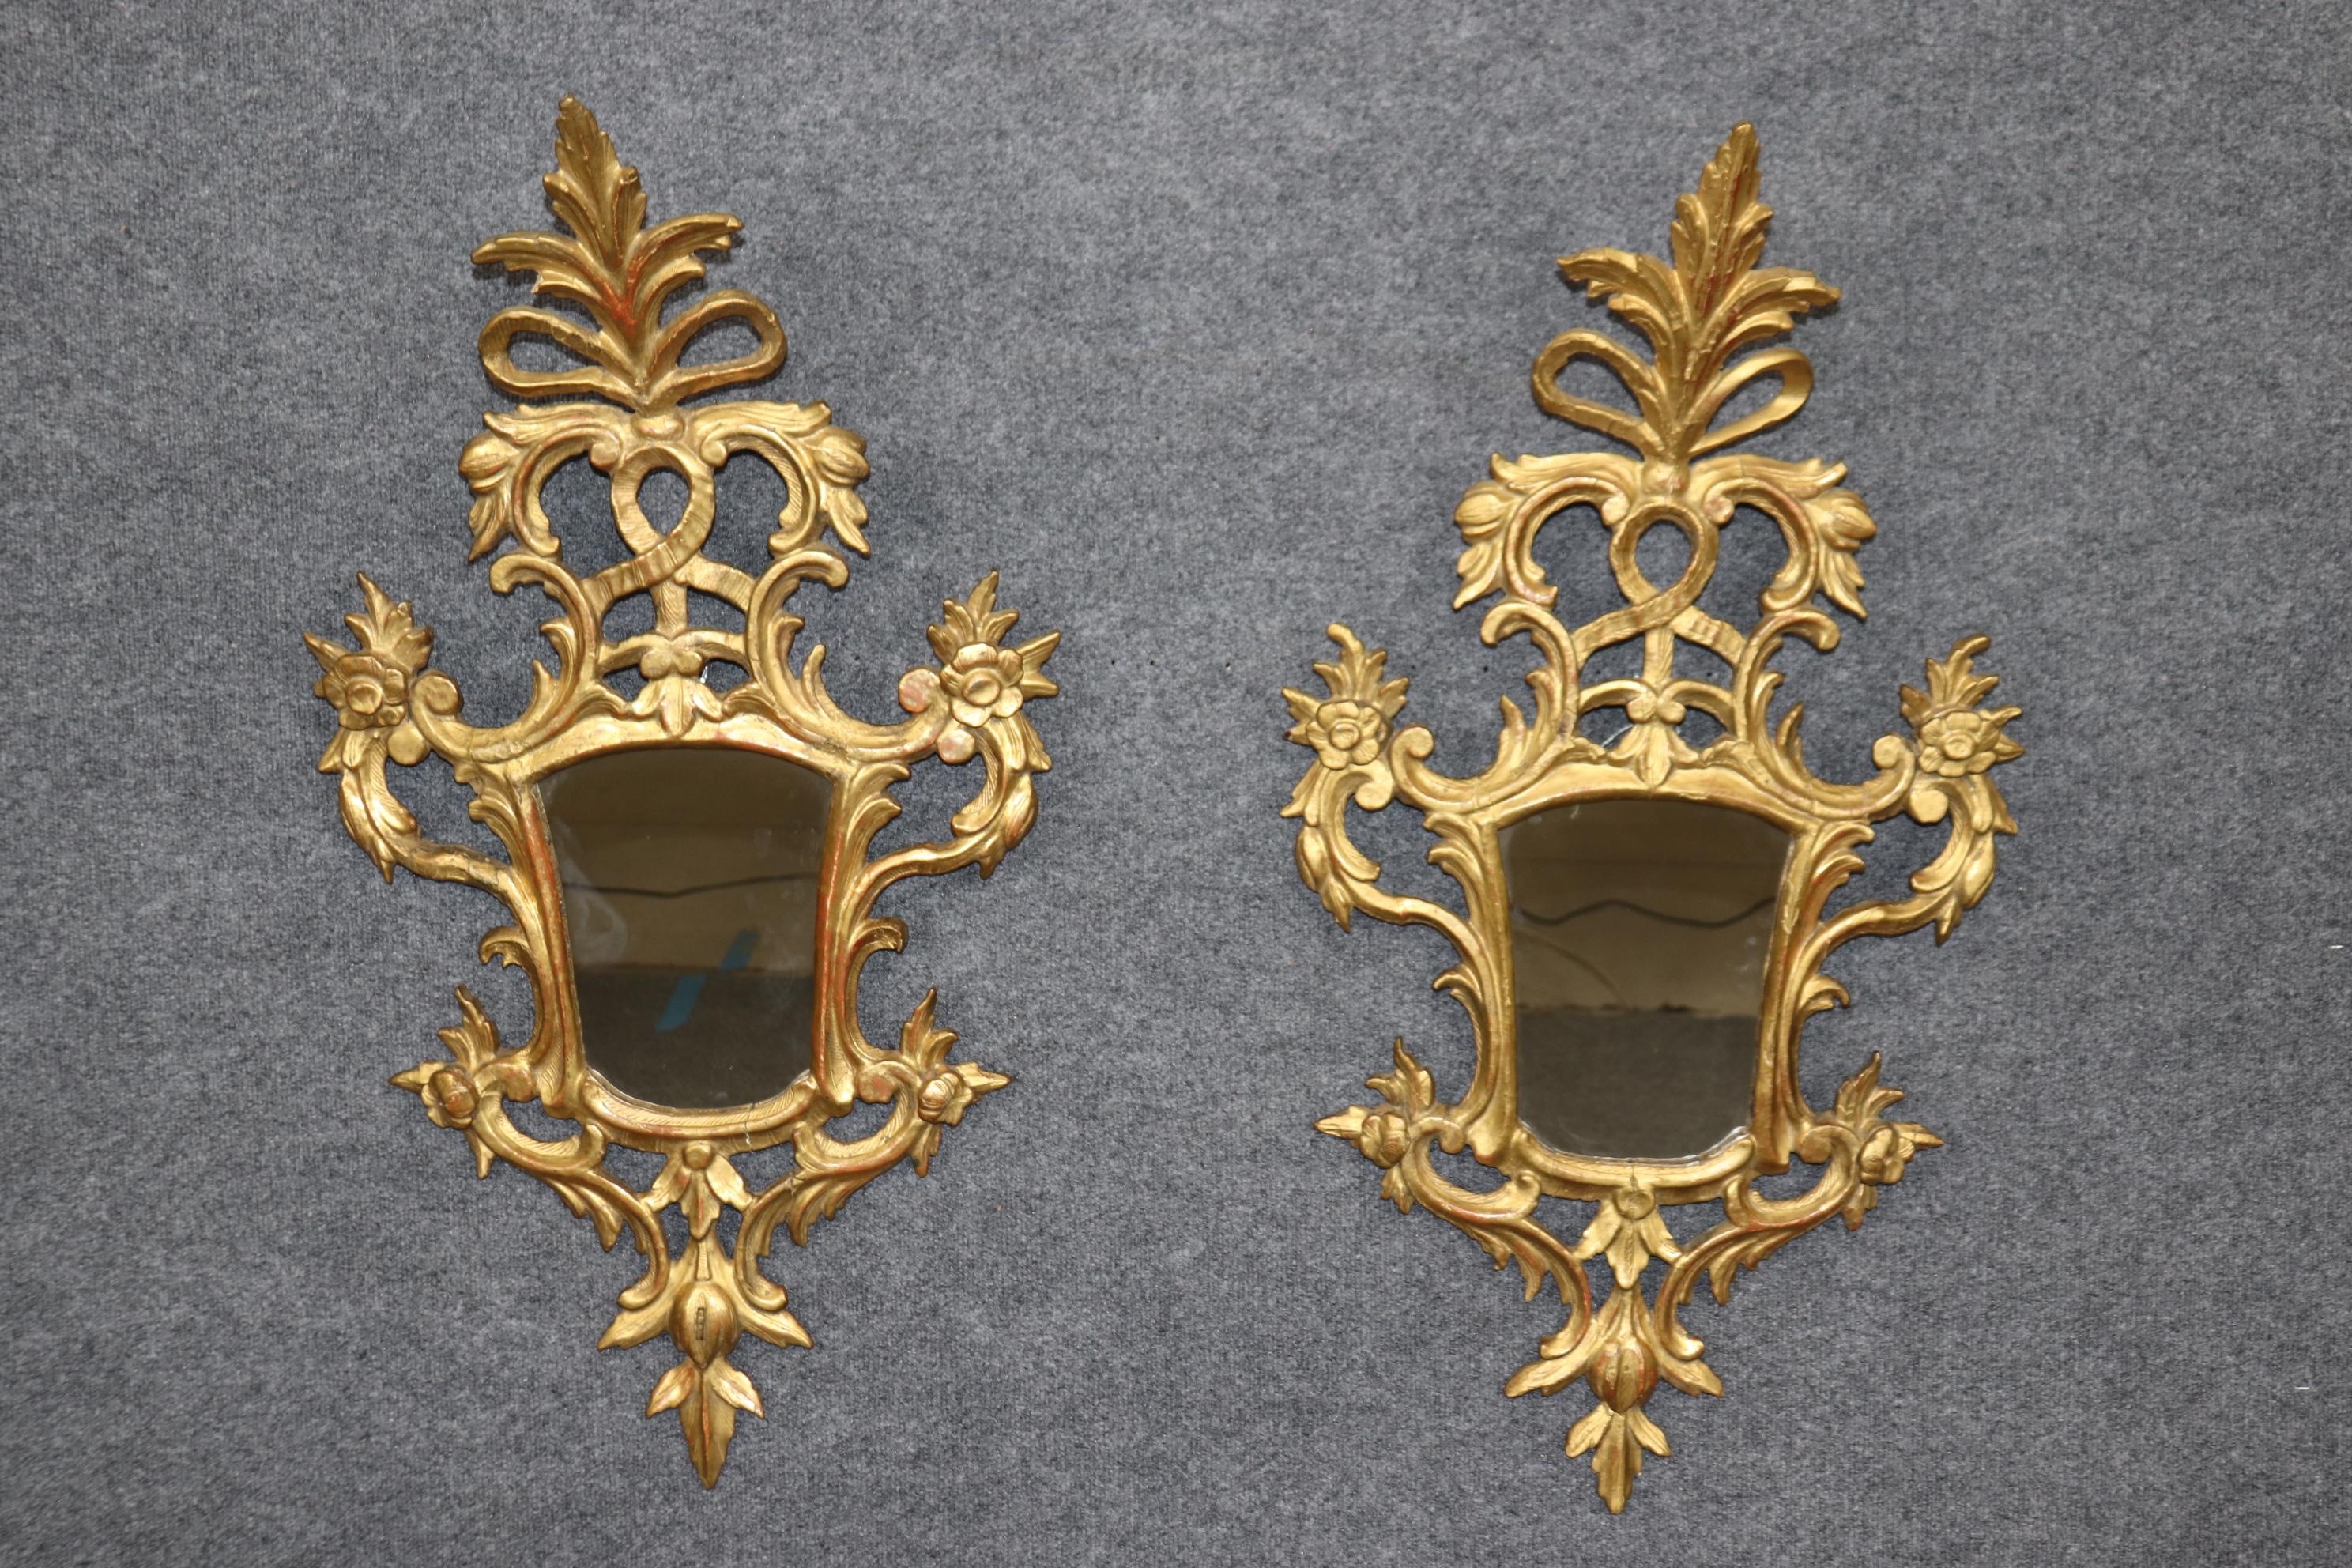 Ces magnifiques petits bijoux datent des années 1820-1840 et sont italiens, probablement de Florence. Les miroirs sont gracieusement sculptés dans du bois de hêtre et recouverts d'une véritable finition dorée à l'eau 23 kt sur un fond d'argile rouge